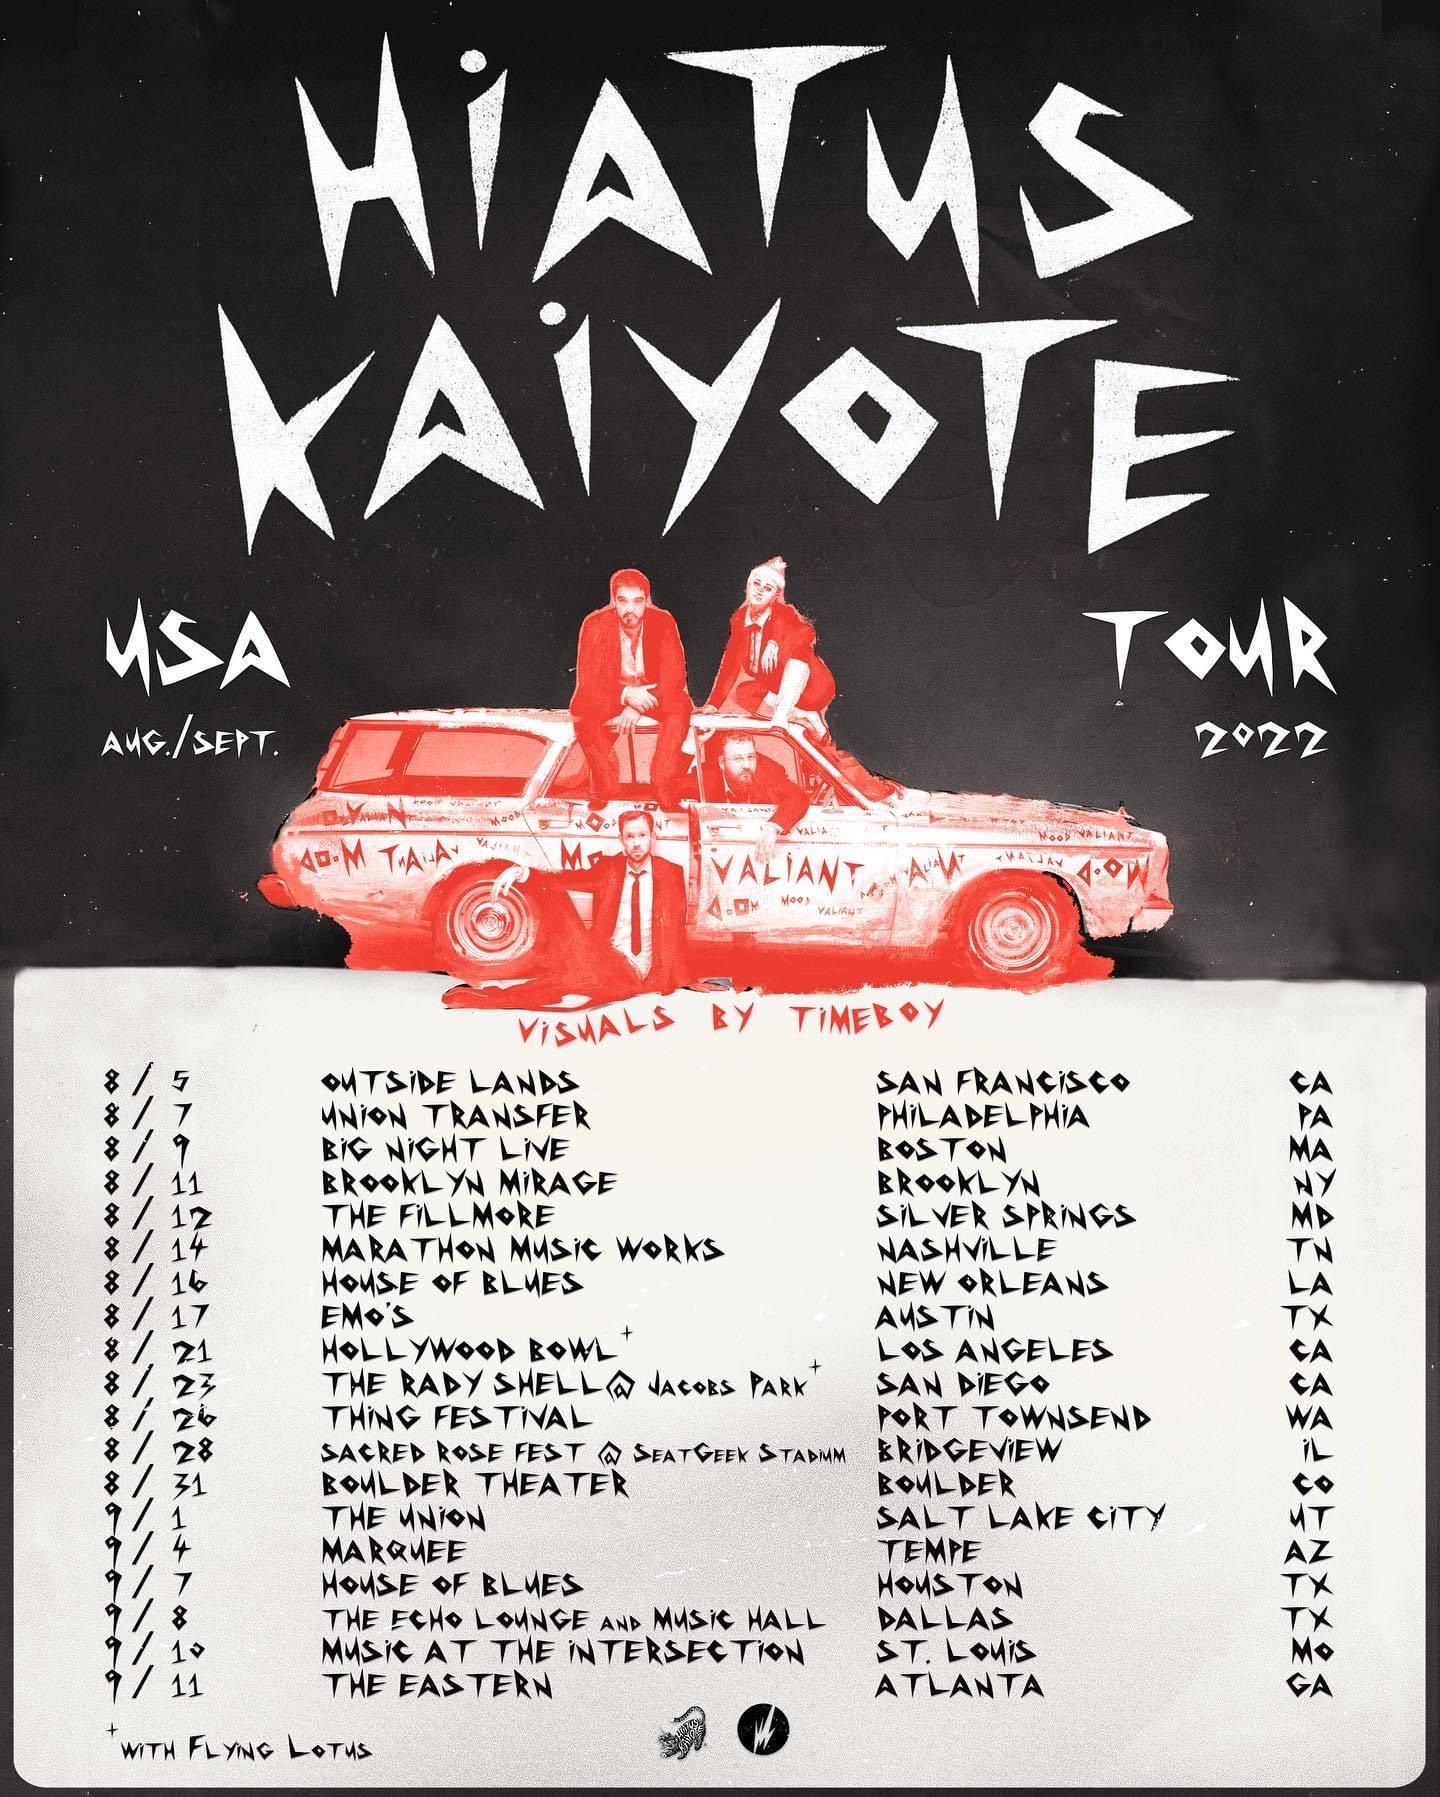 hiatus kaiyote european tour